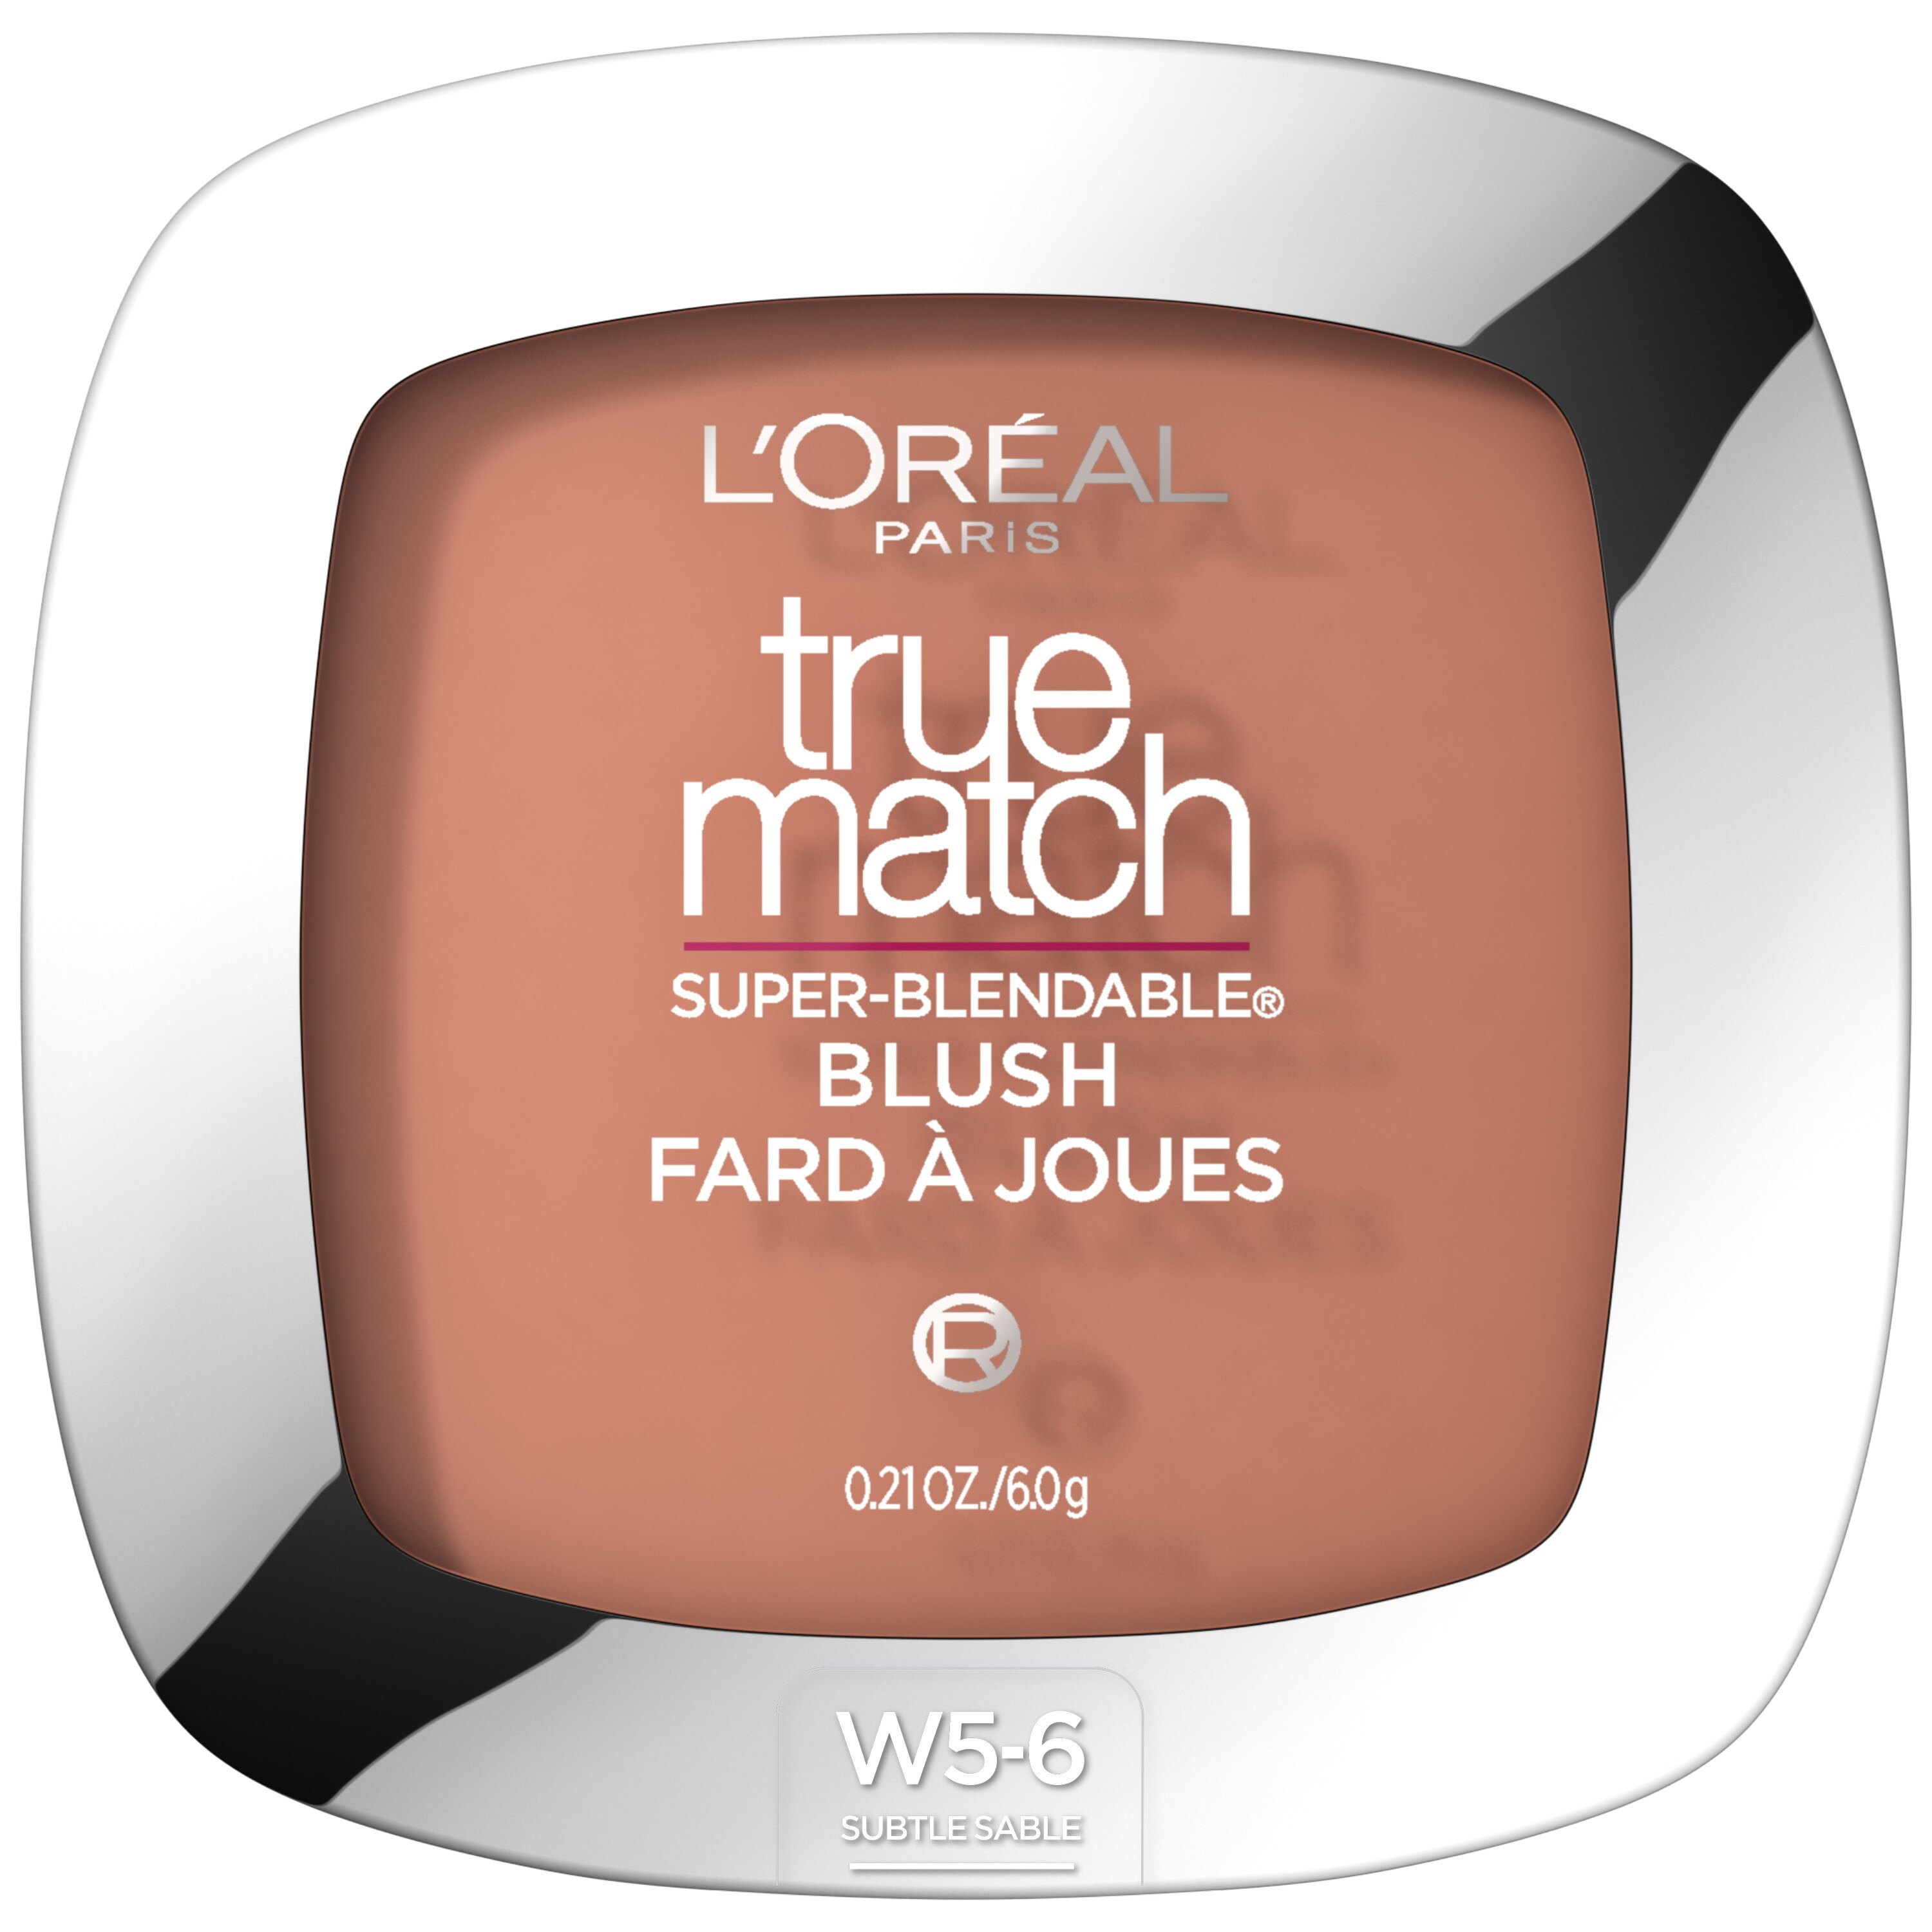 L'Oreal Paris True Match Super-Blendable Blush, W5-6 Subtle Sable , CVS